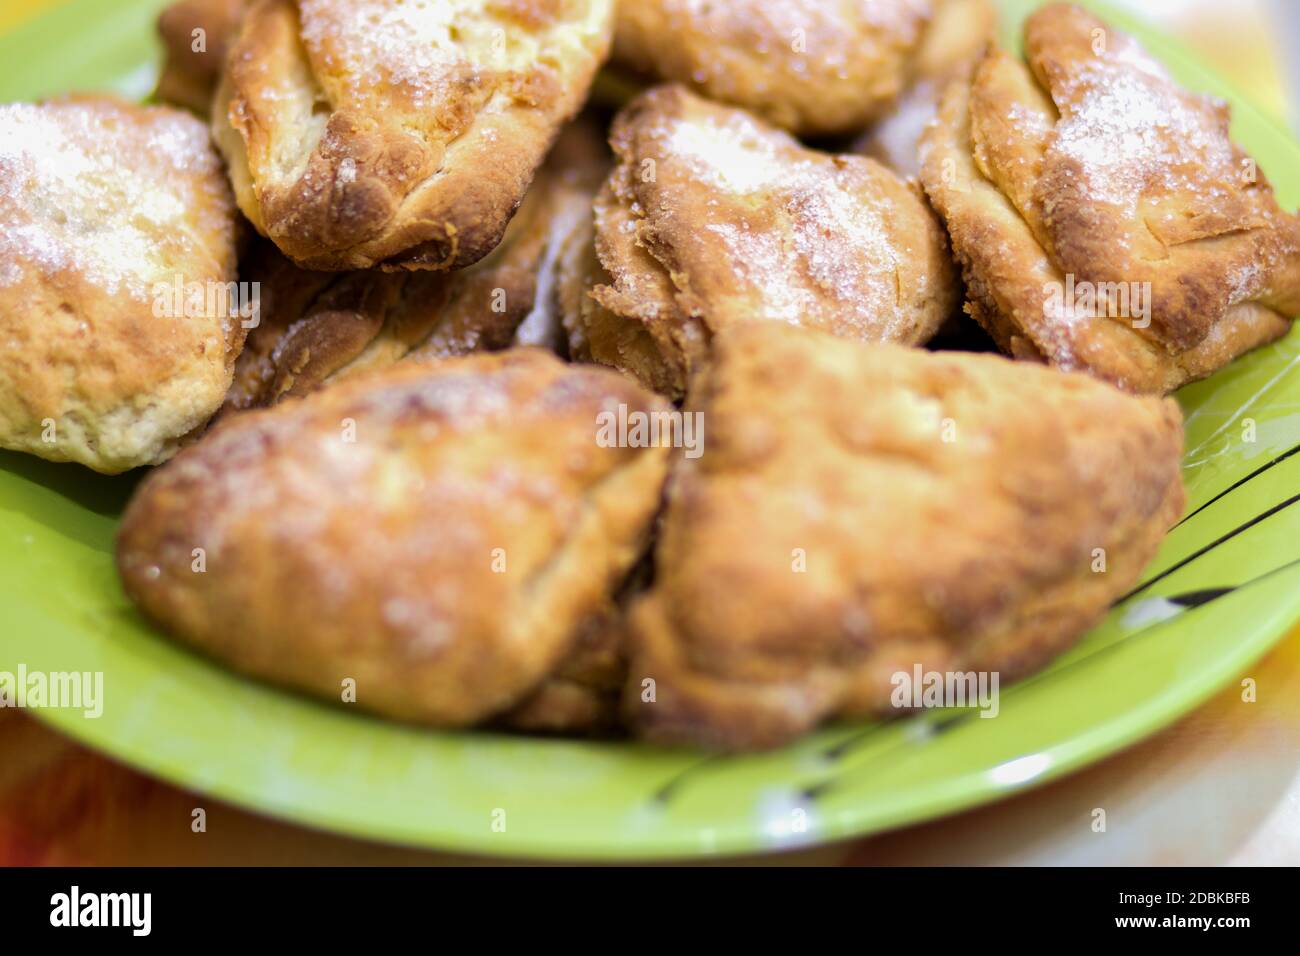 Biscuits avec du sucre, cuits, se trouve dans une assiette sur la table Banque D'Images